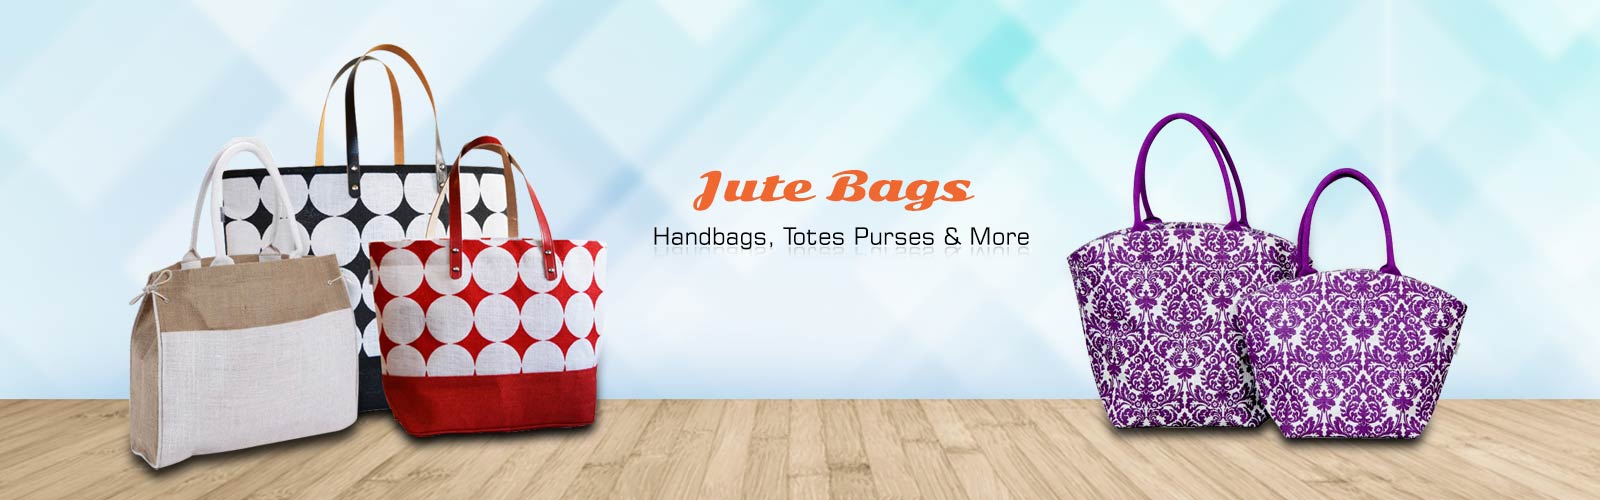 Wholesale Jute Bag Supplier in Detroit